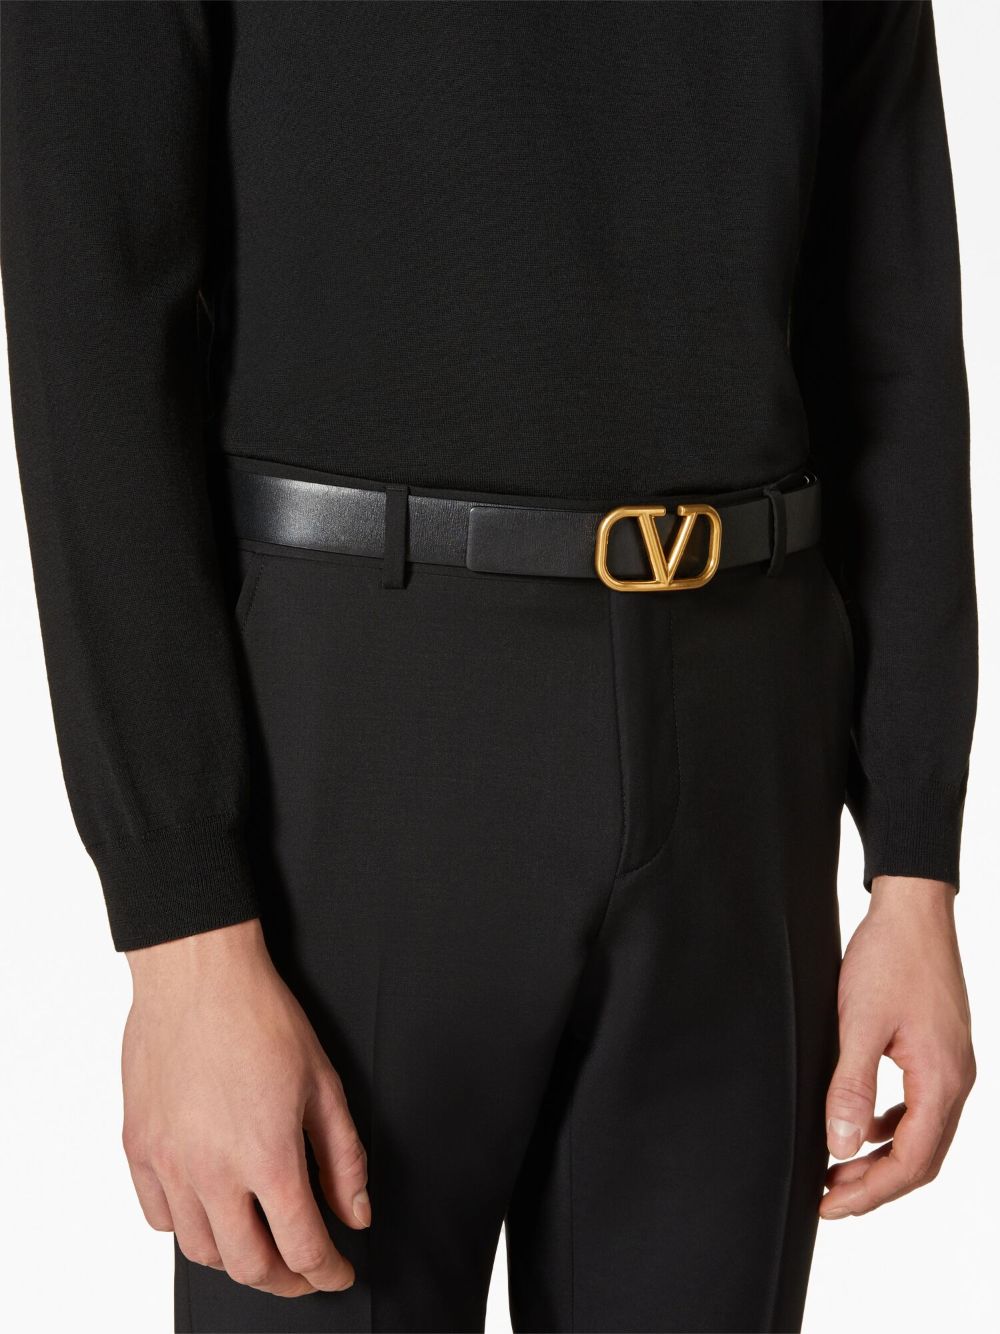 VLogo Signature leather belt<BR/><BR/><BR/>